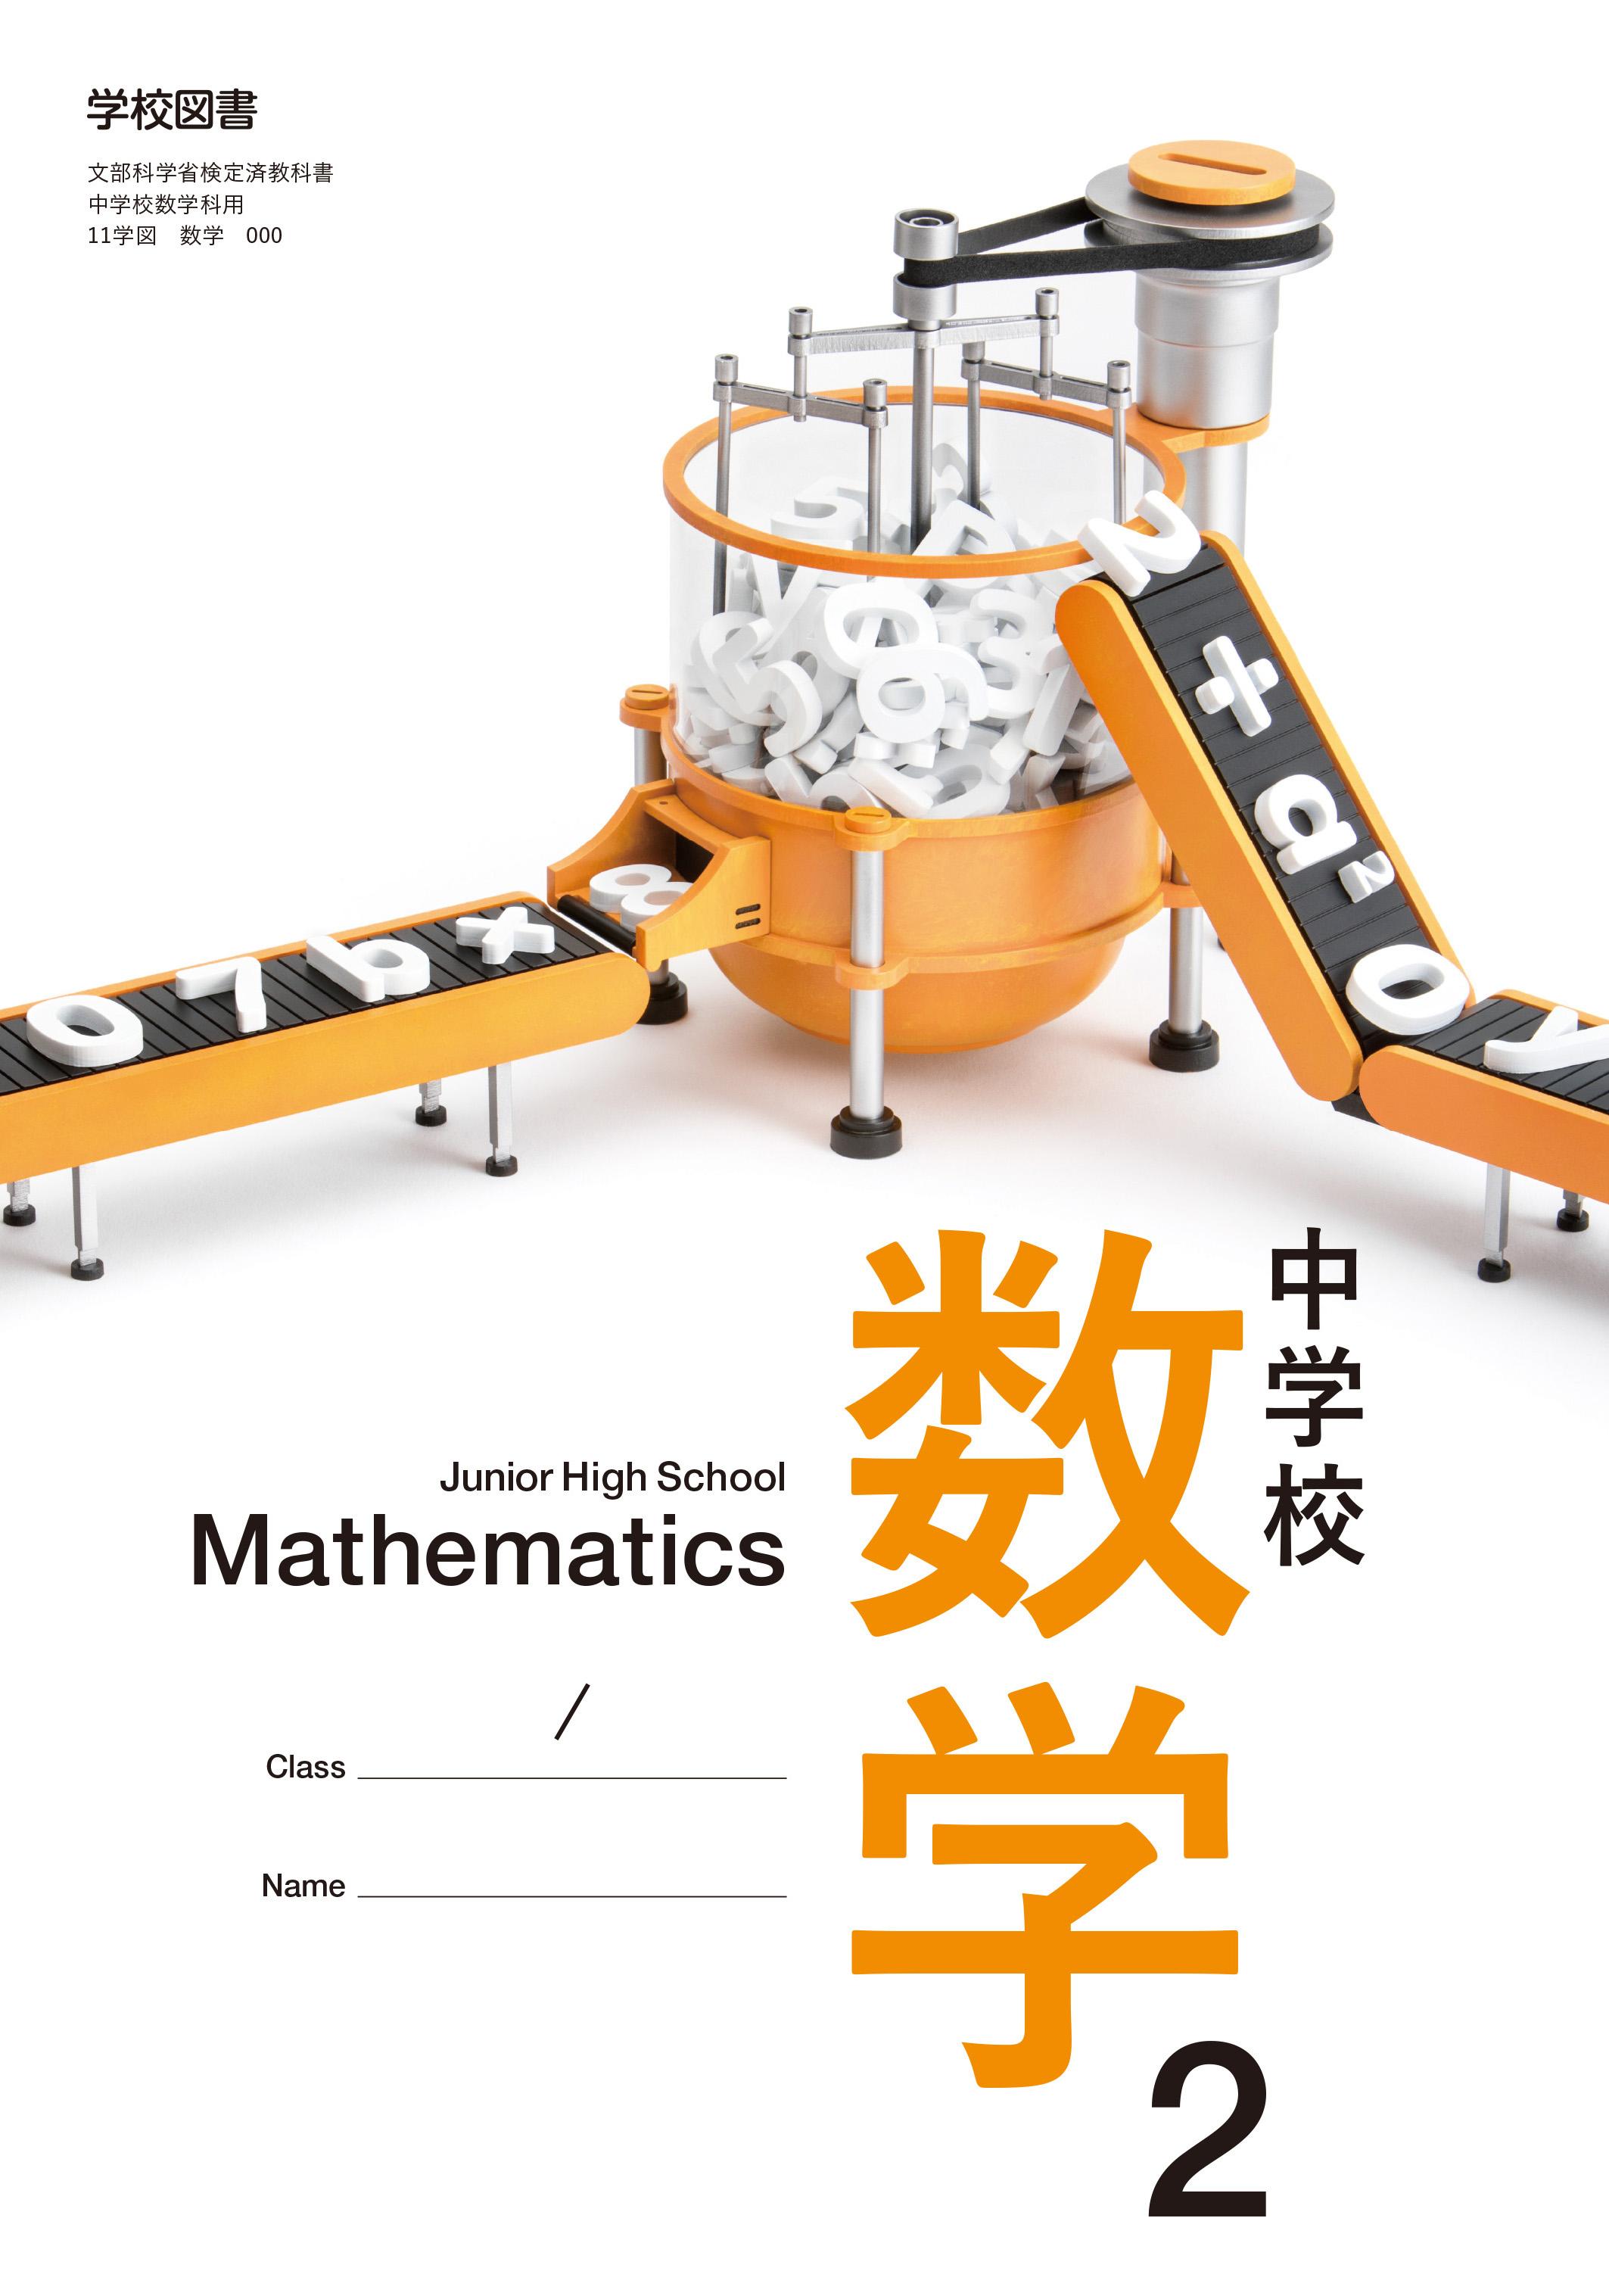 nissinlife丨充满想象力的日本教科书封面设计